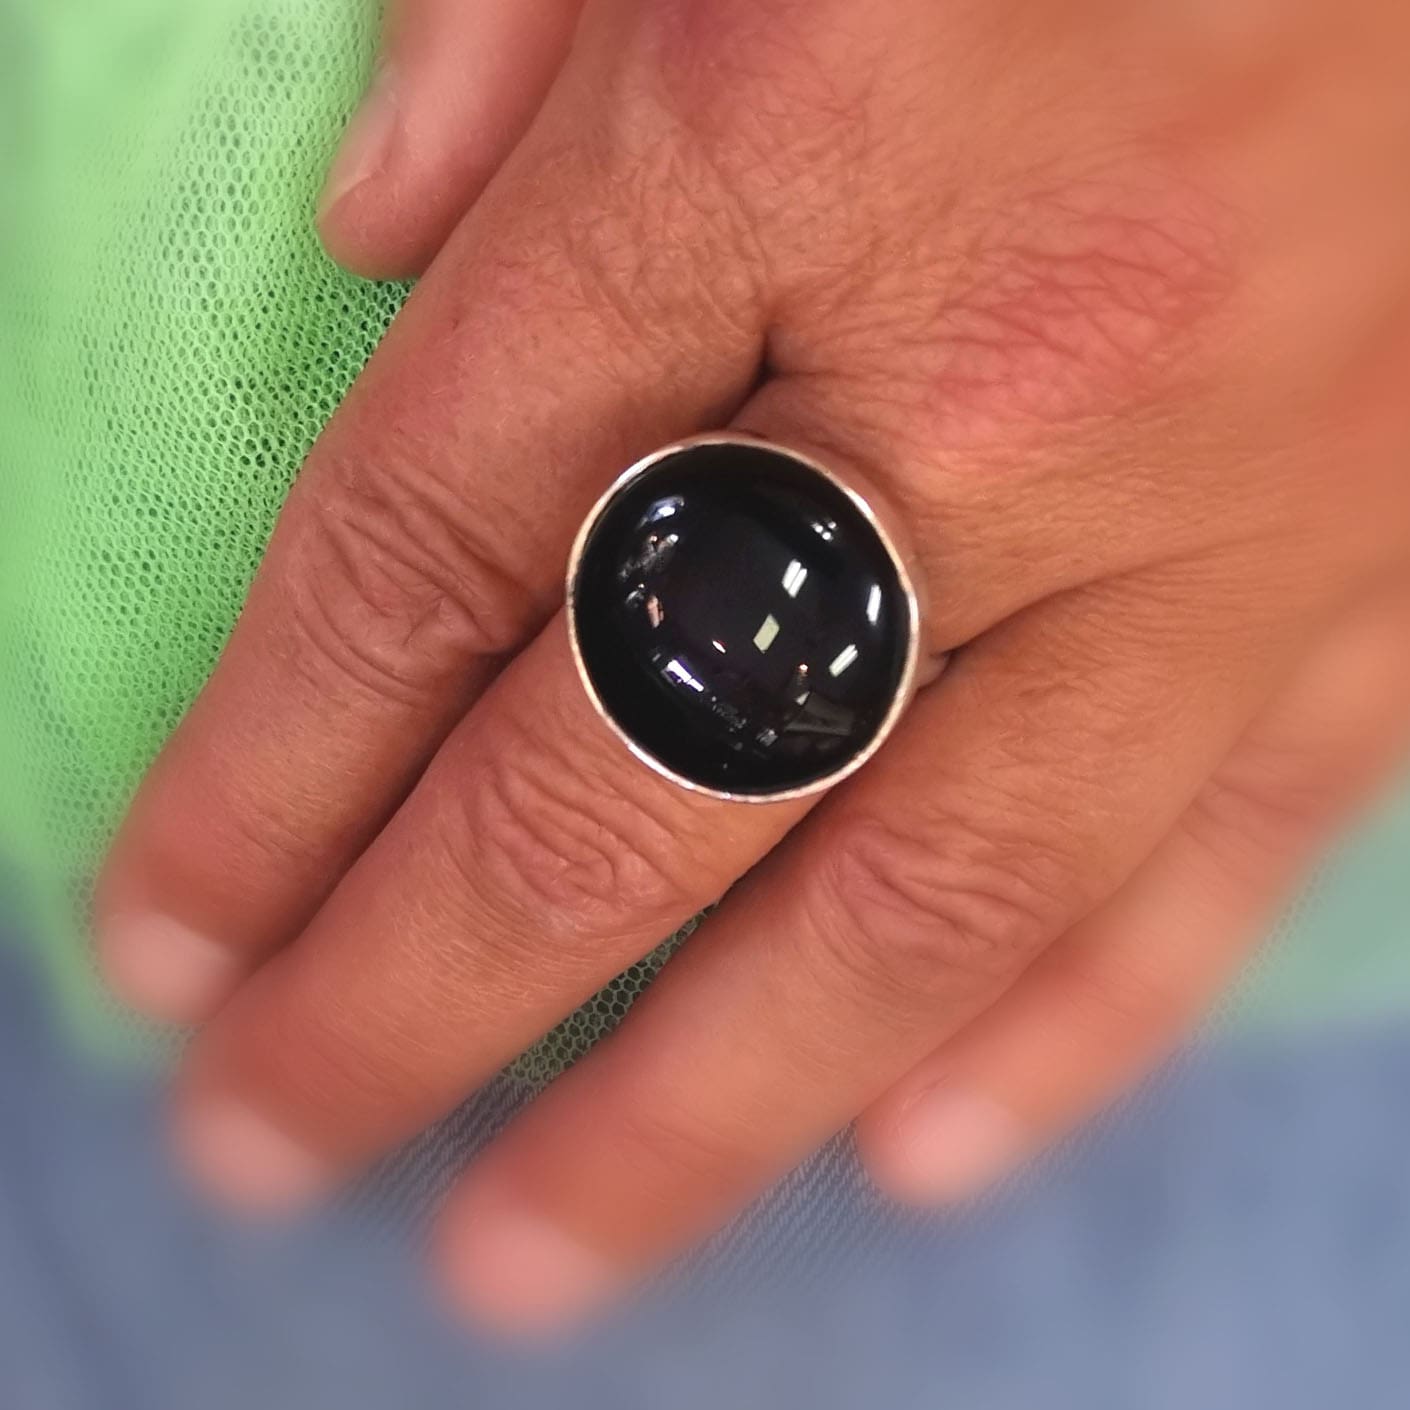 Onyx Edelstein Heilstein Ring schwarz, Größe verstellbar - Widerstandkraft, Schutz